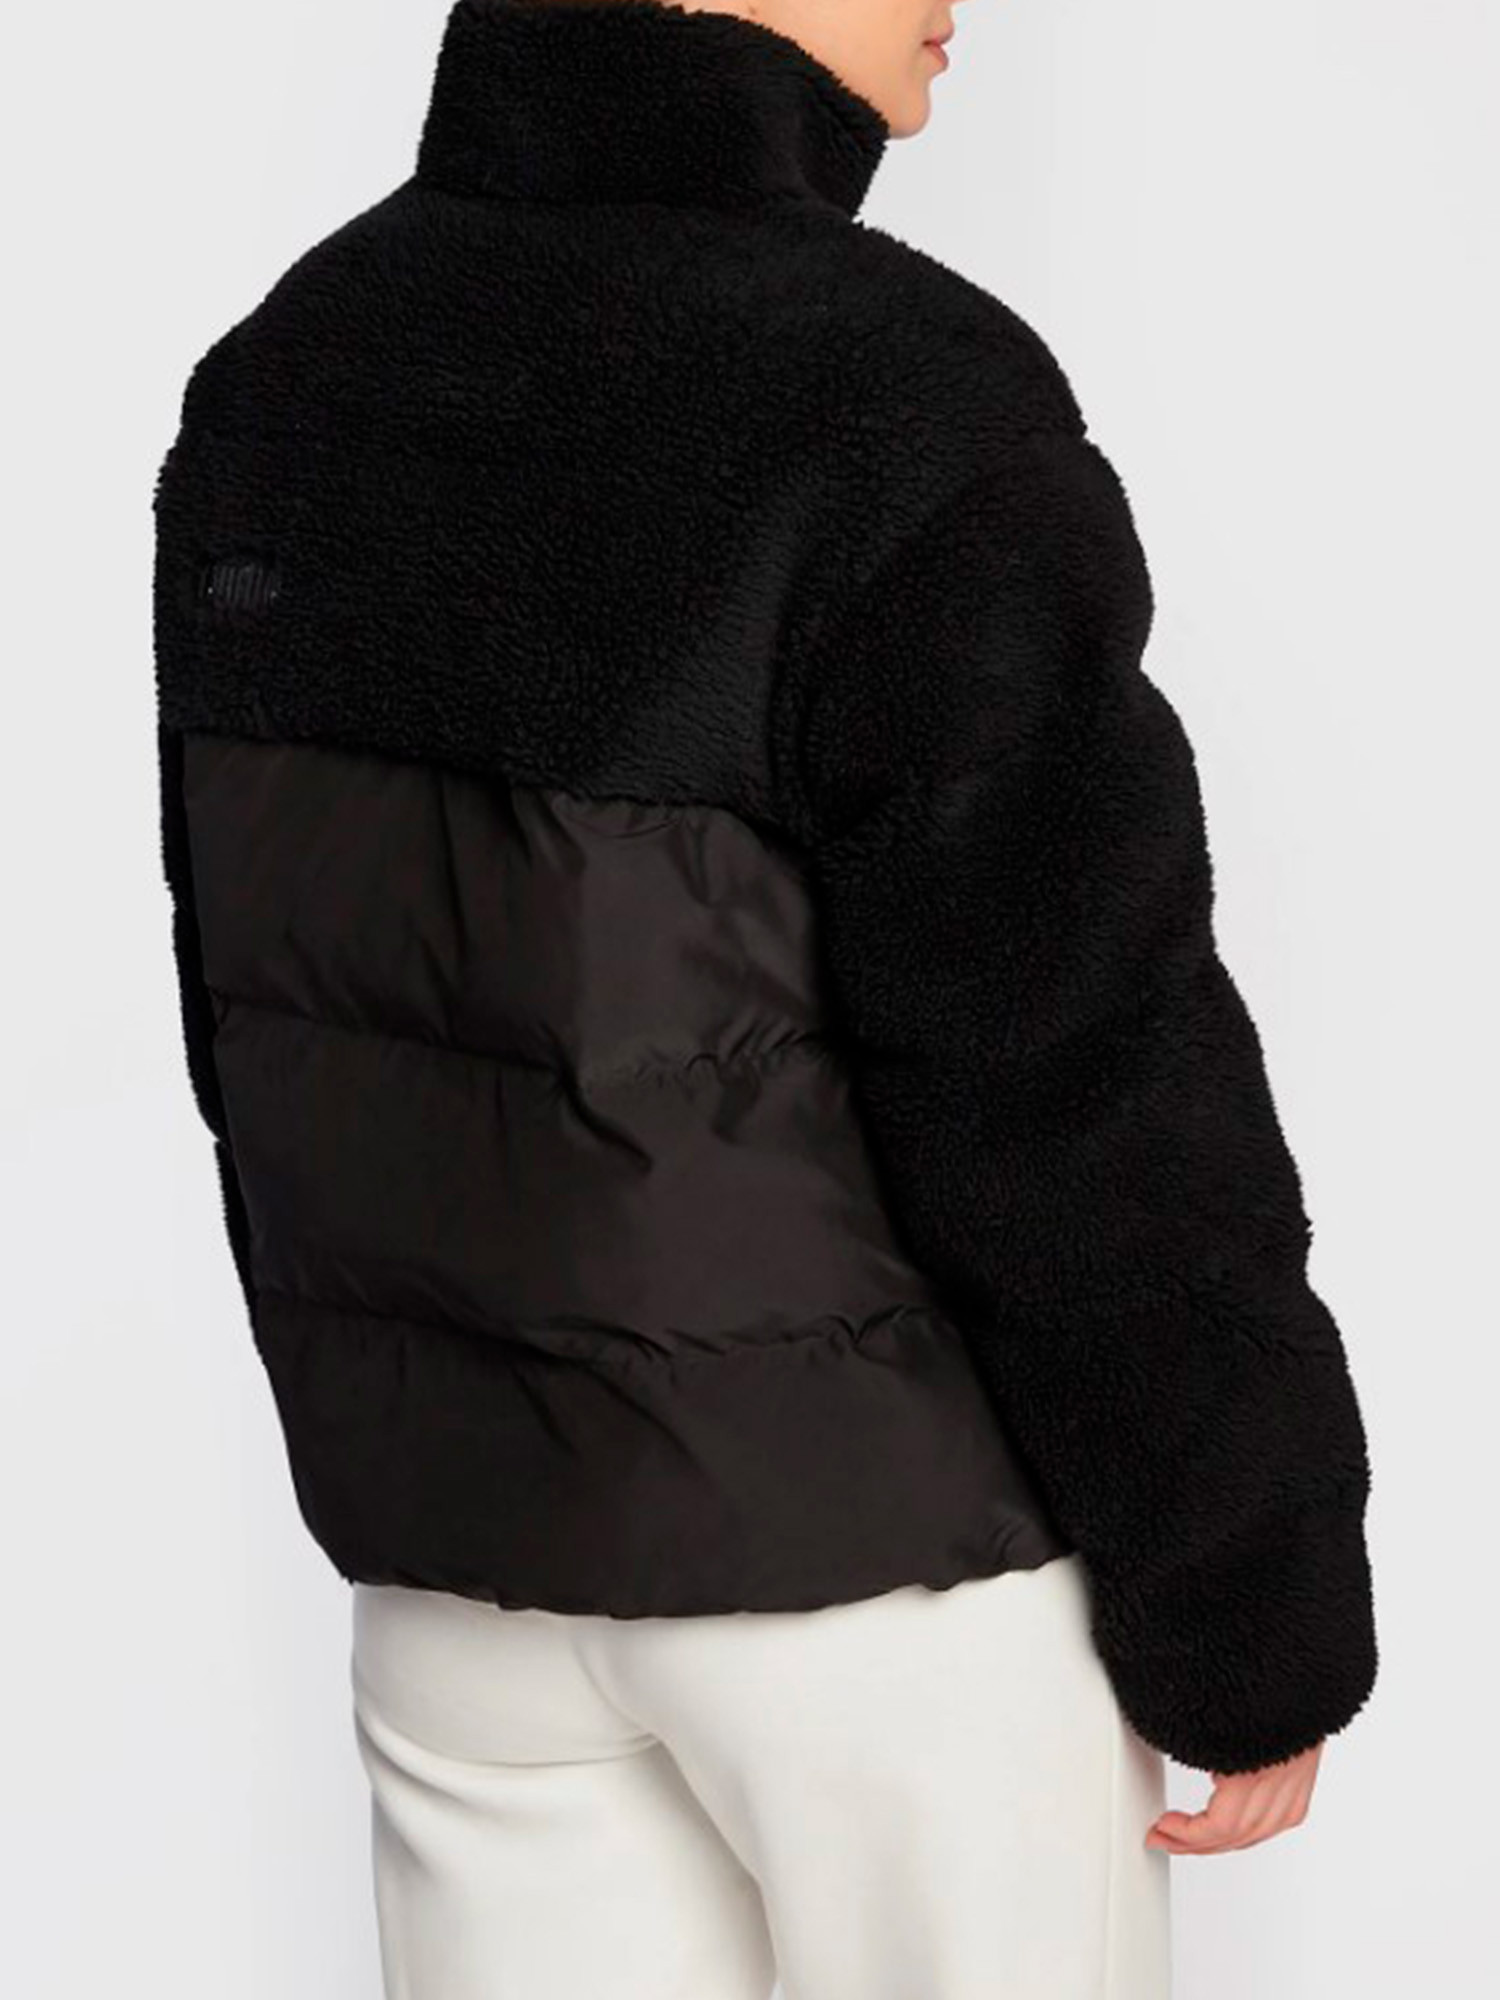 Куртка утепленная женская PUMA Sherpa